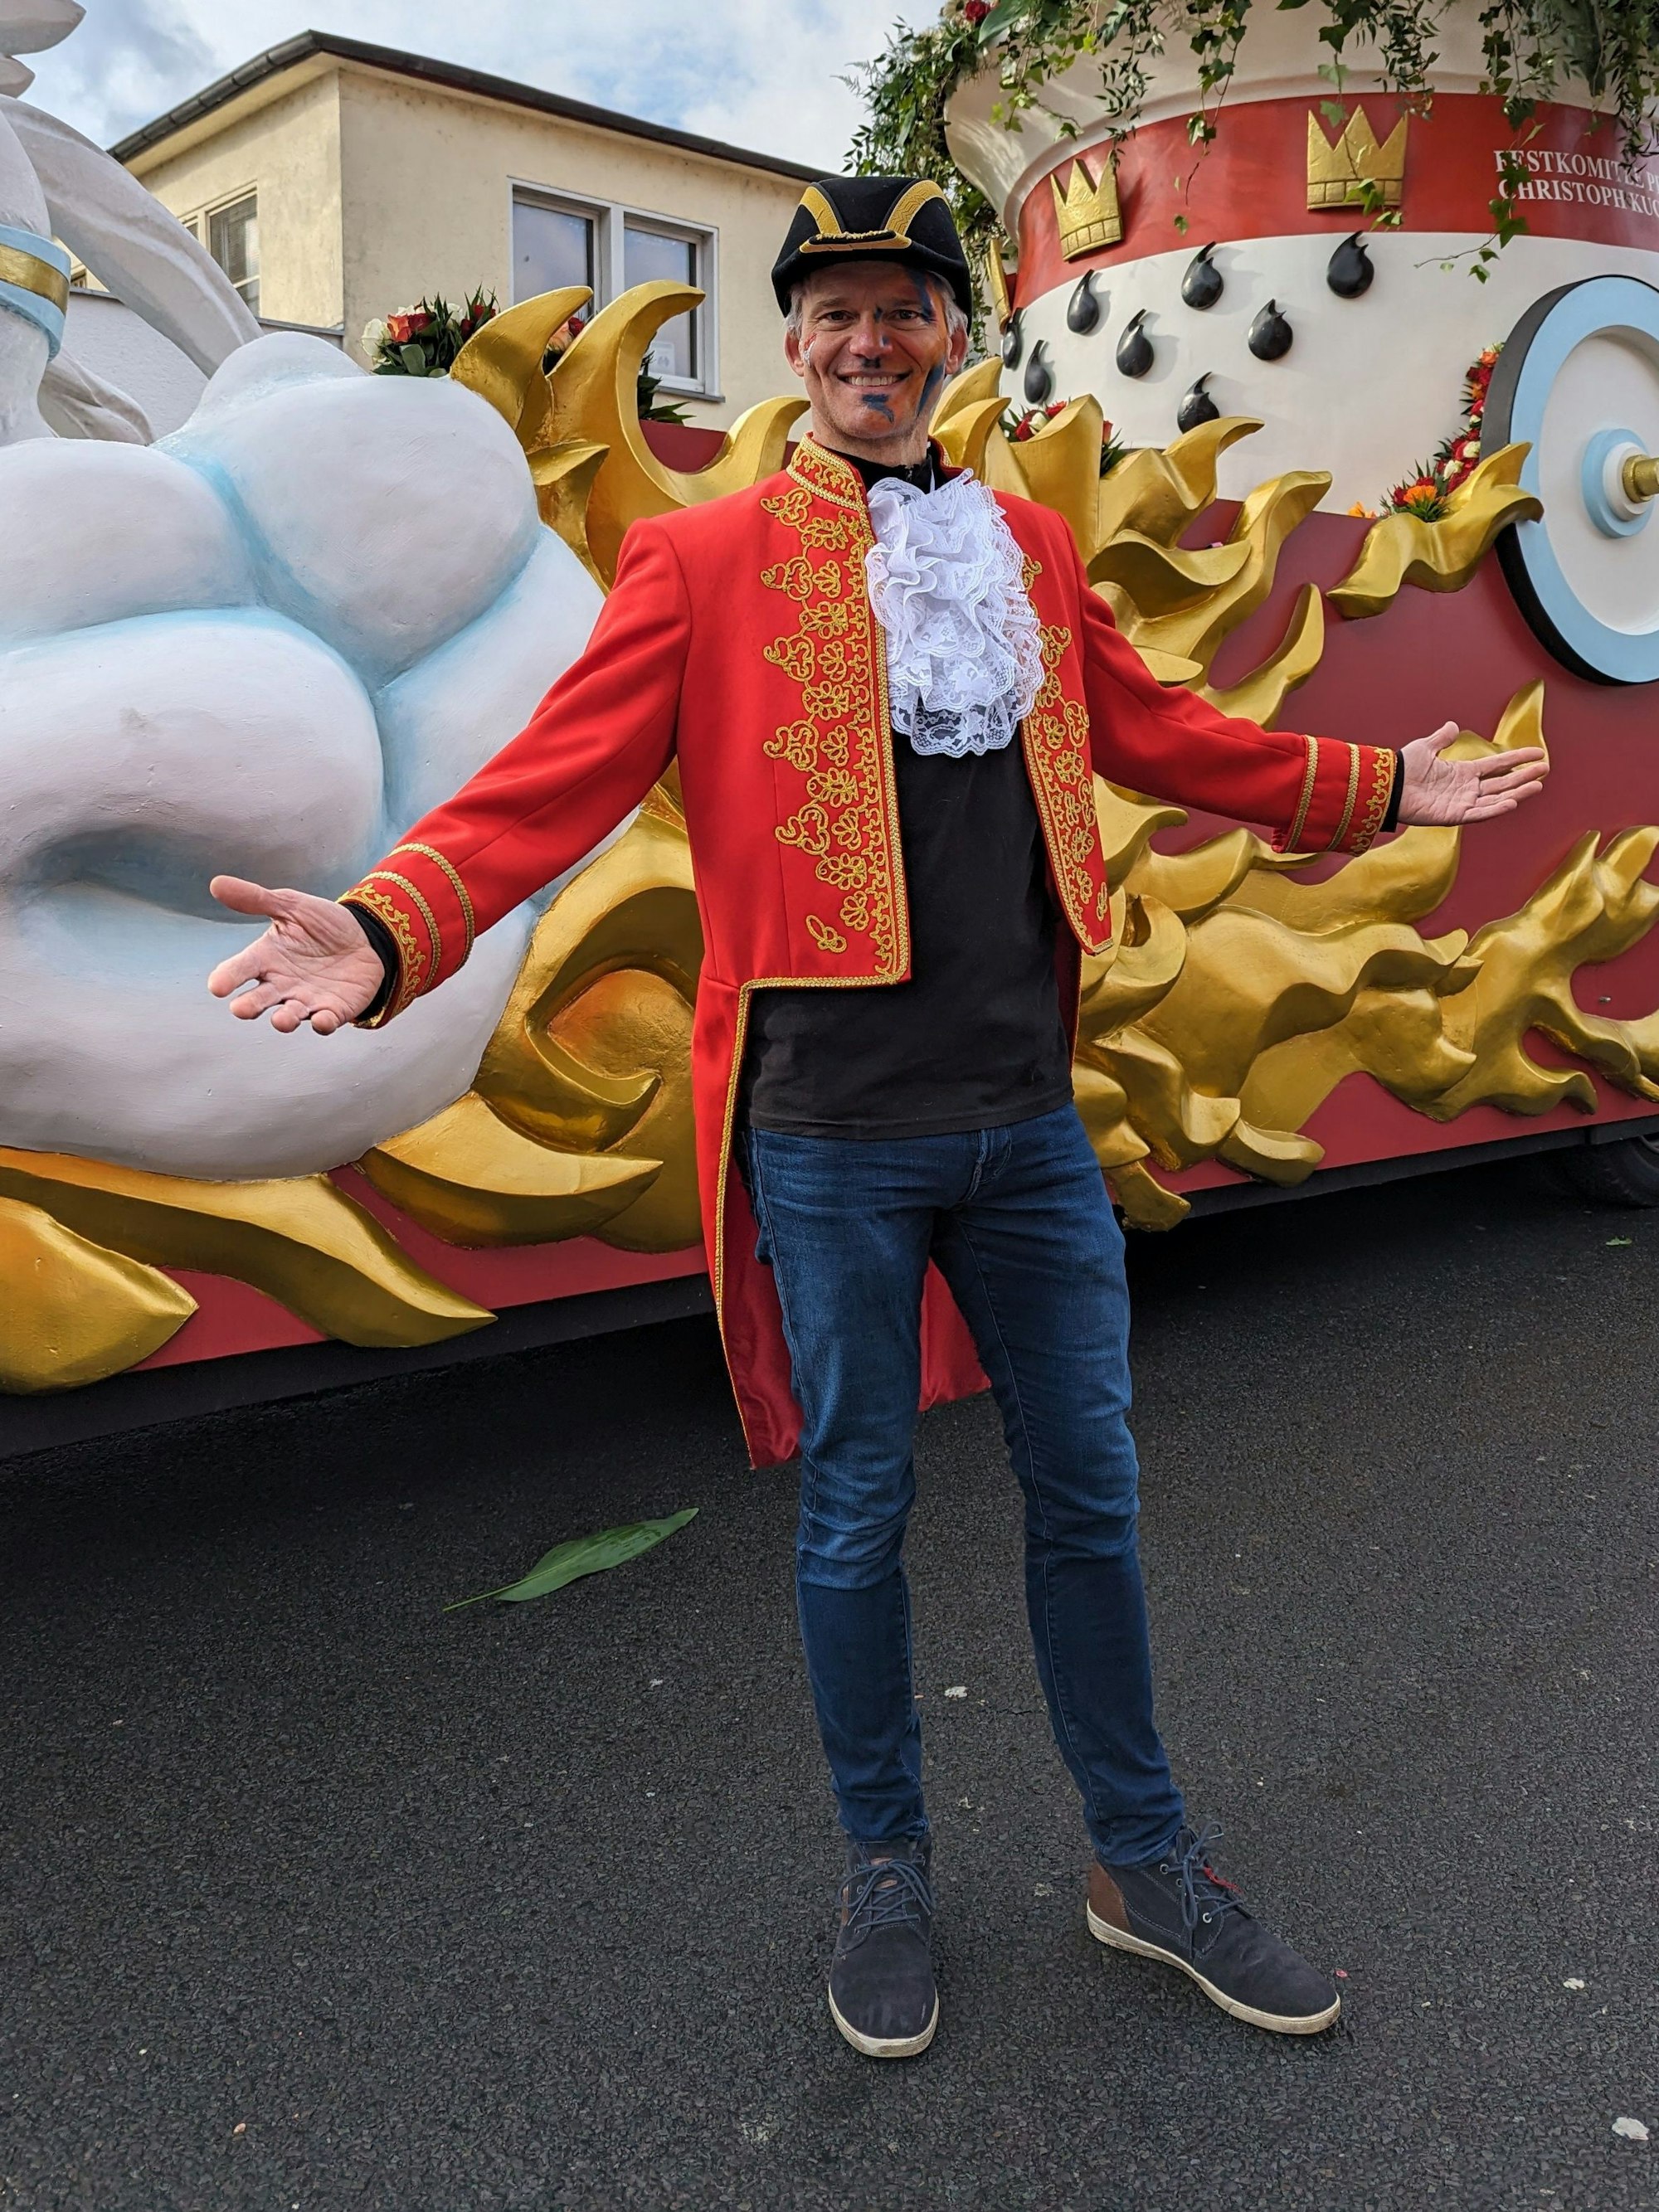 Thorsten Schröder, „Tagesschau“-Sprecher, steht vor dem Wagen des Präsidenten des Festkomitees Kölner Karneval, auf dem er mitfahren wird.